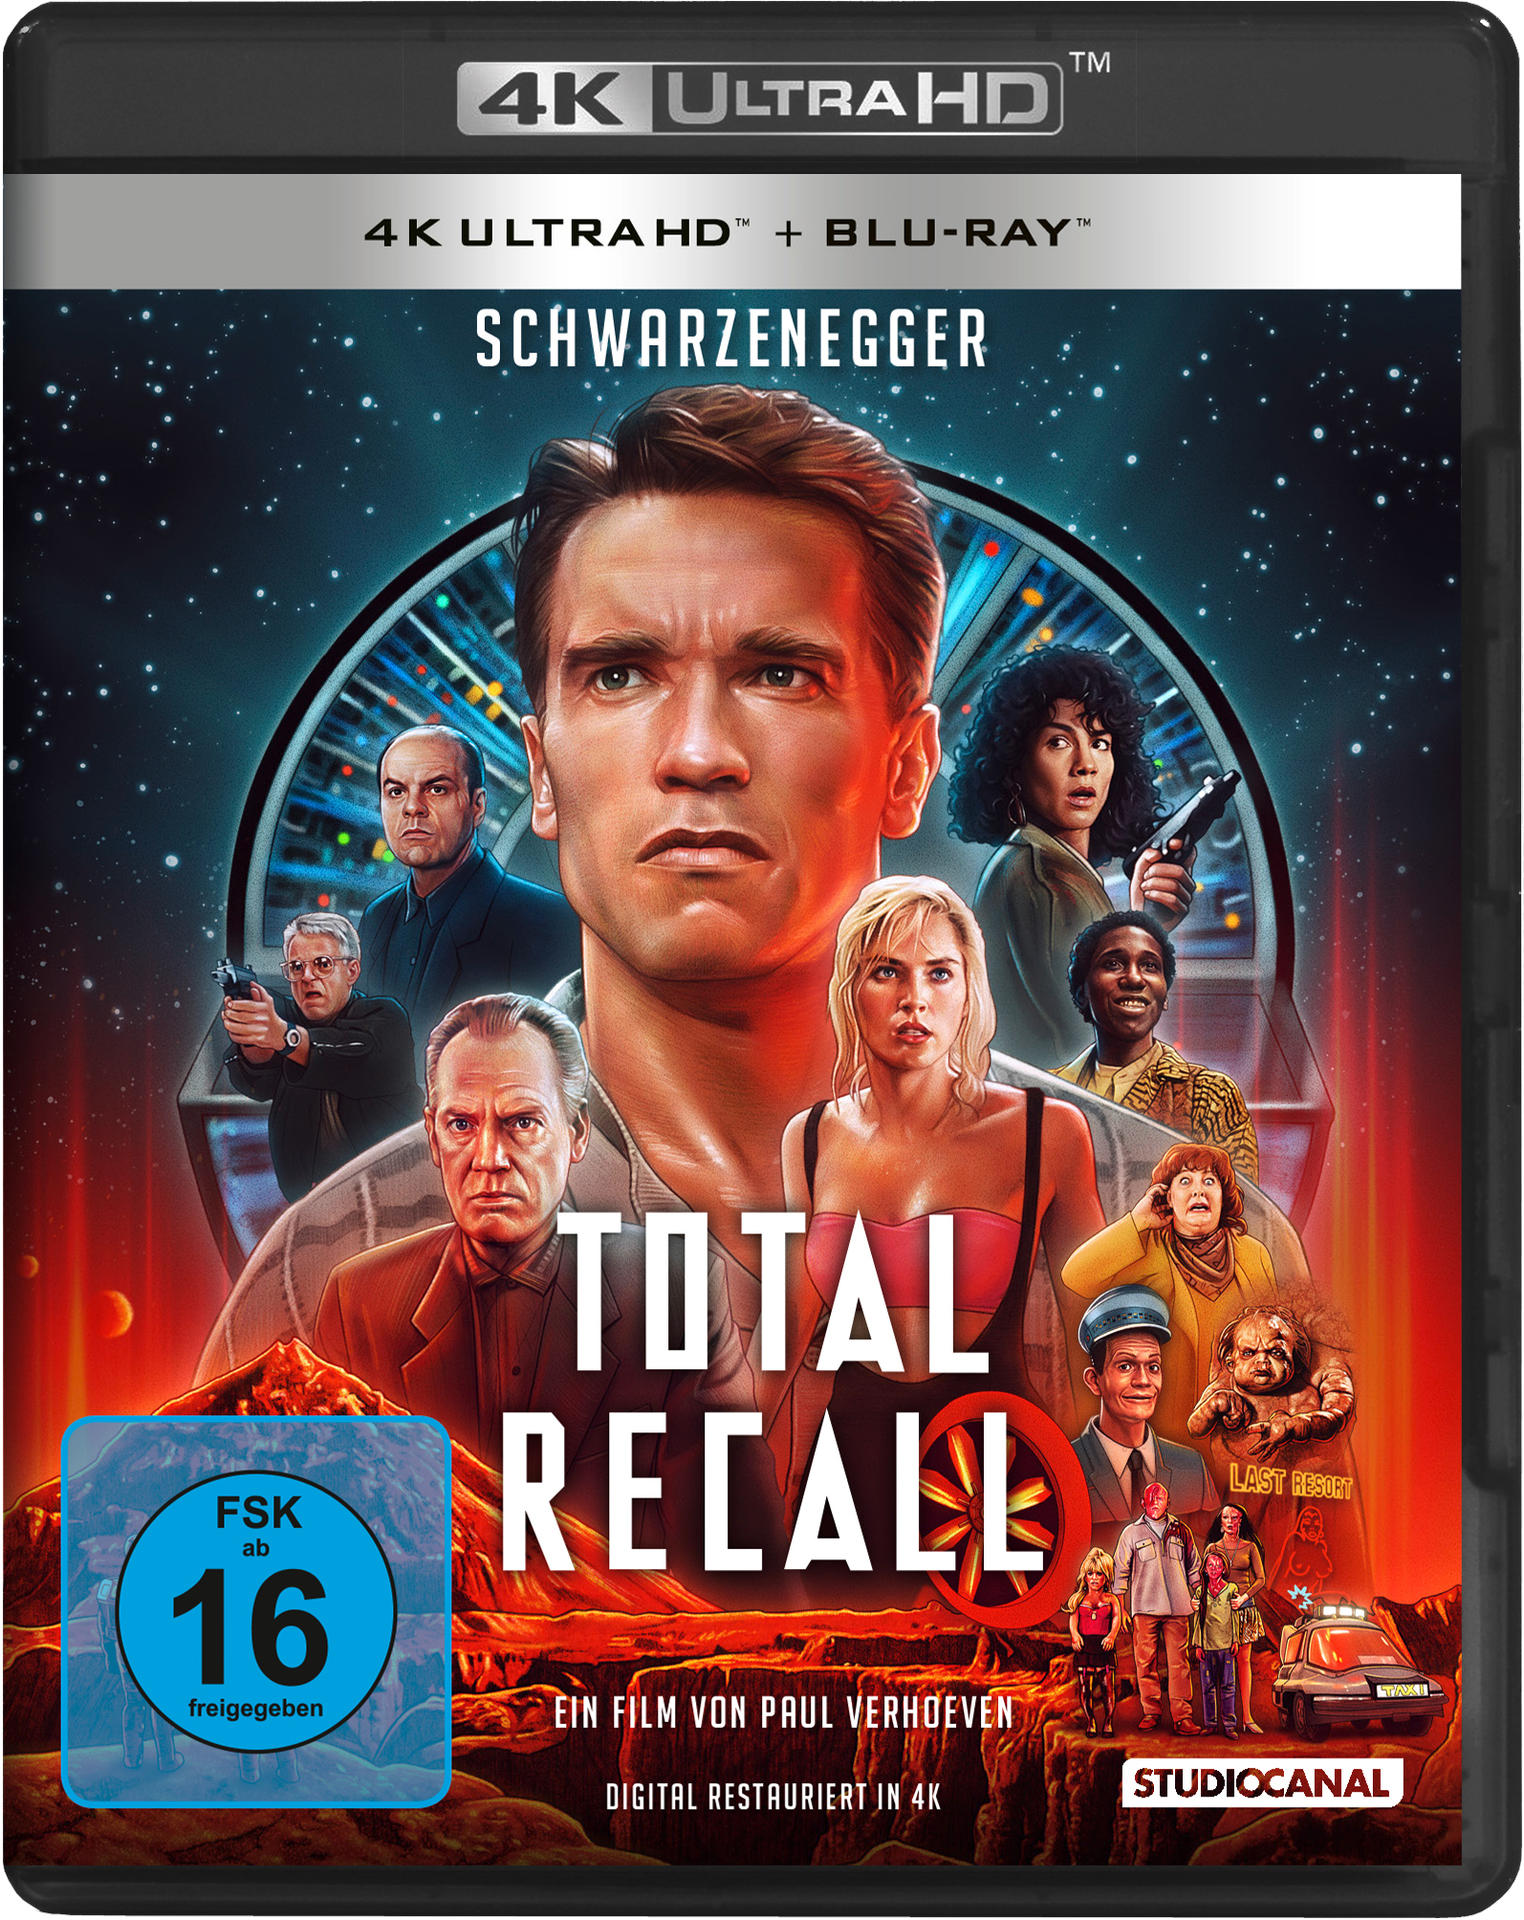 Die Recall Blu-ray - totale Total Ultra HD 4K Erinnerung